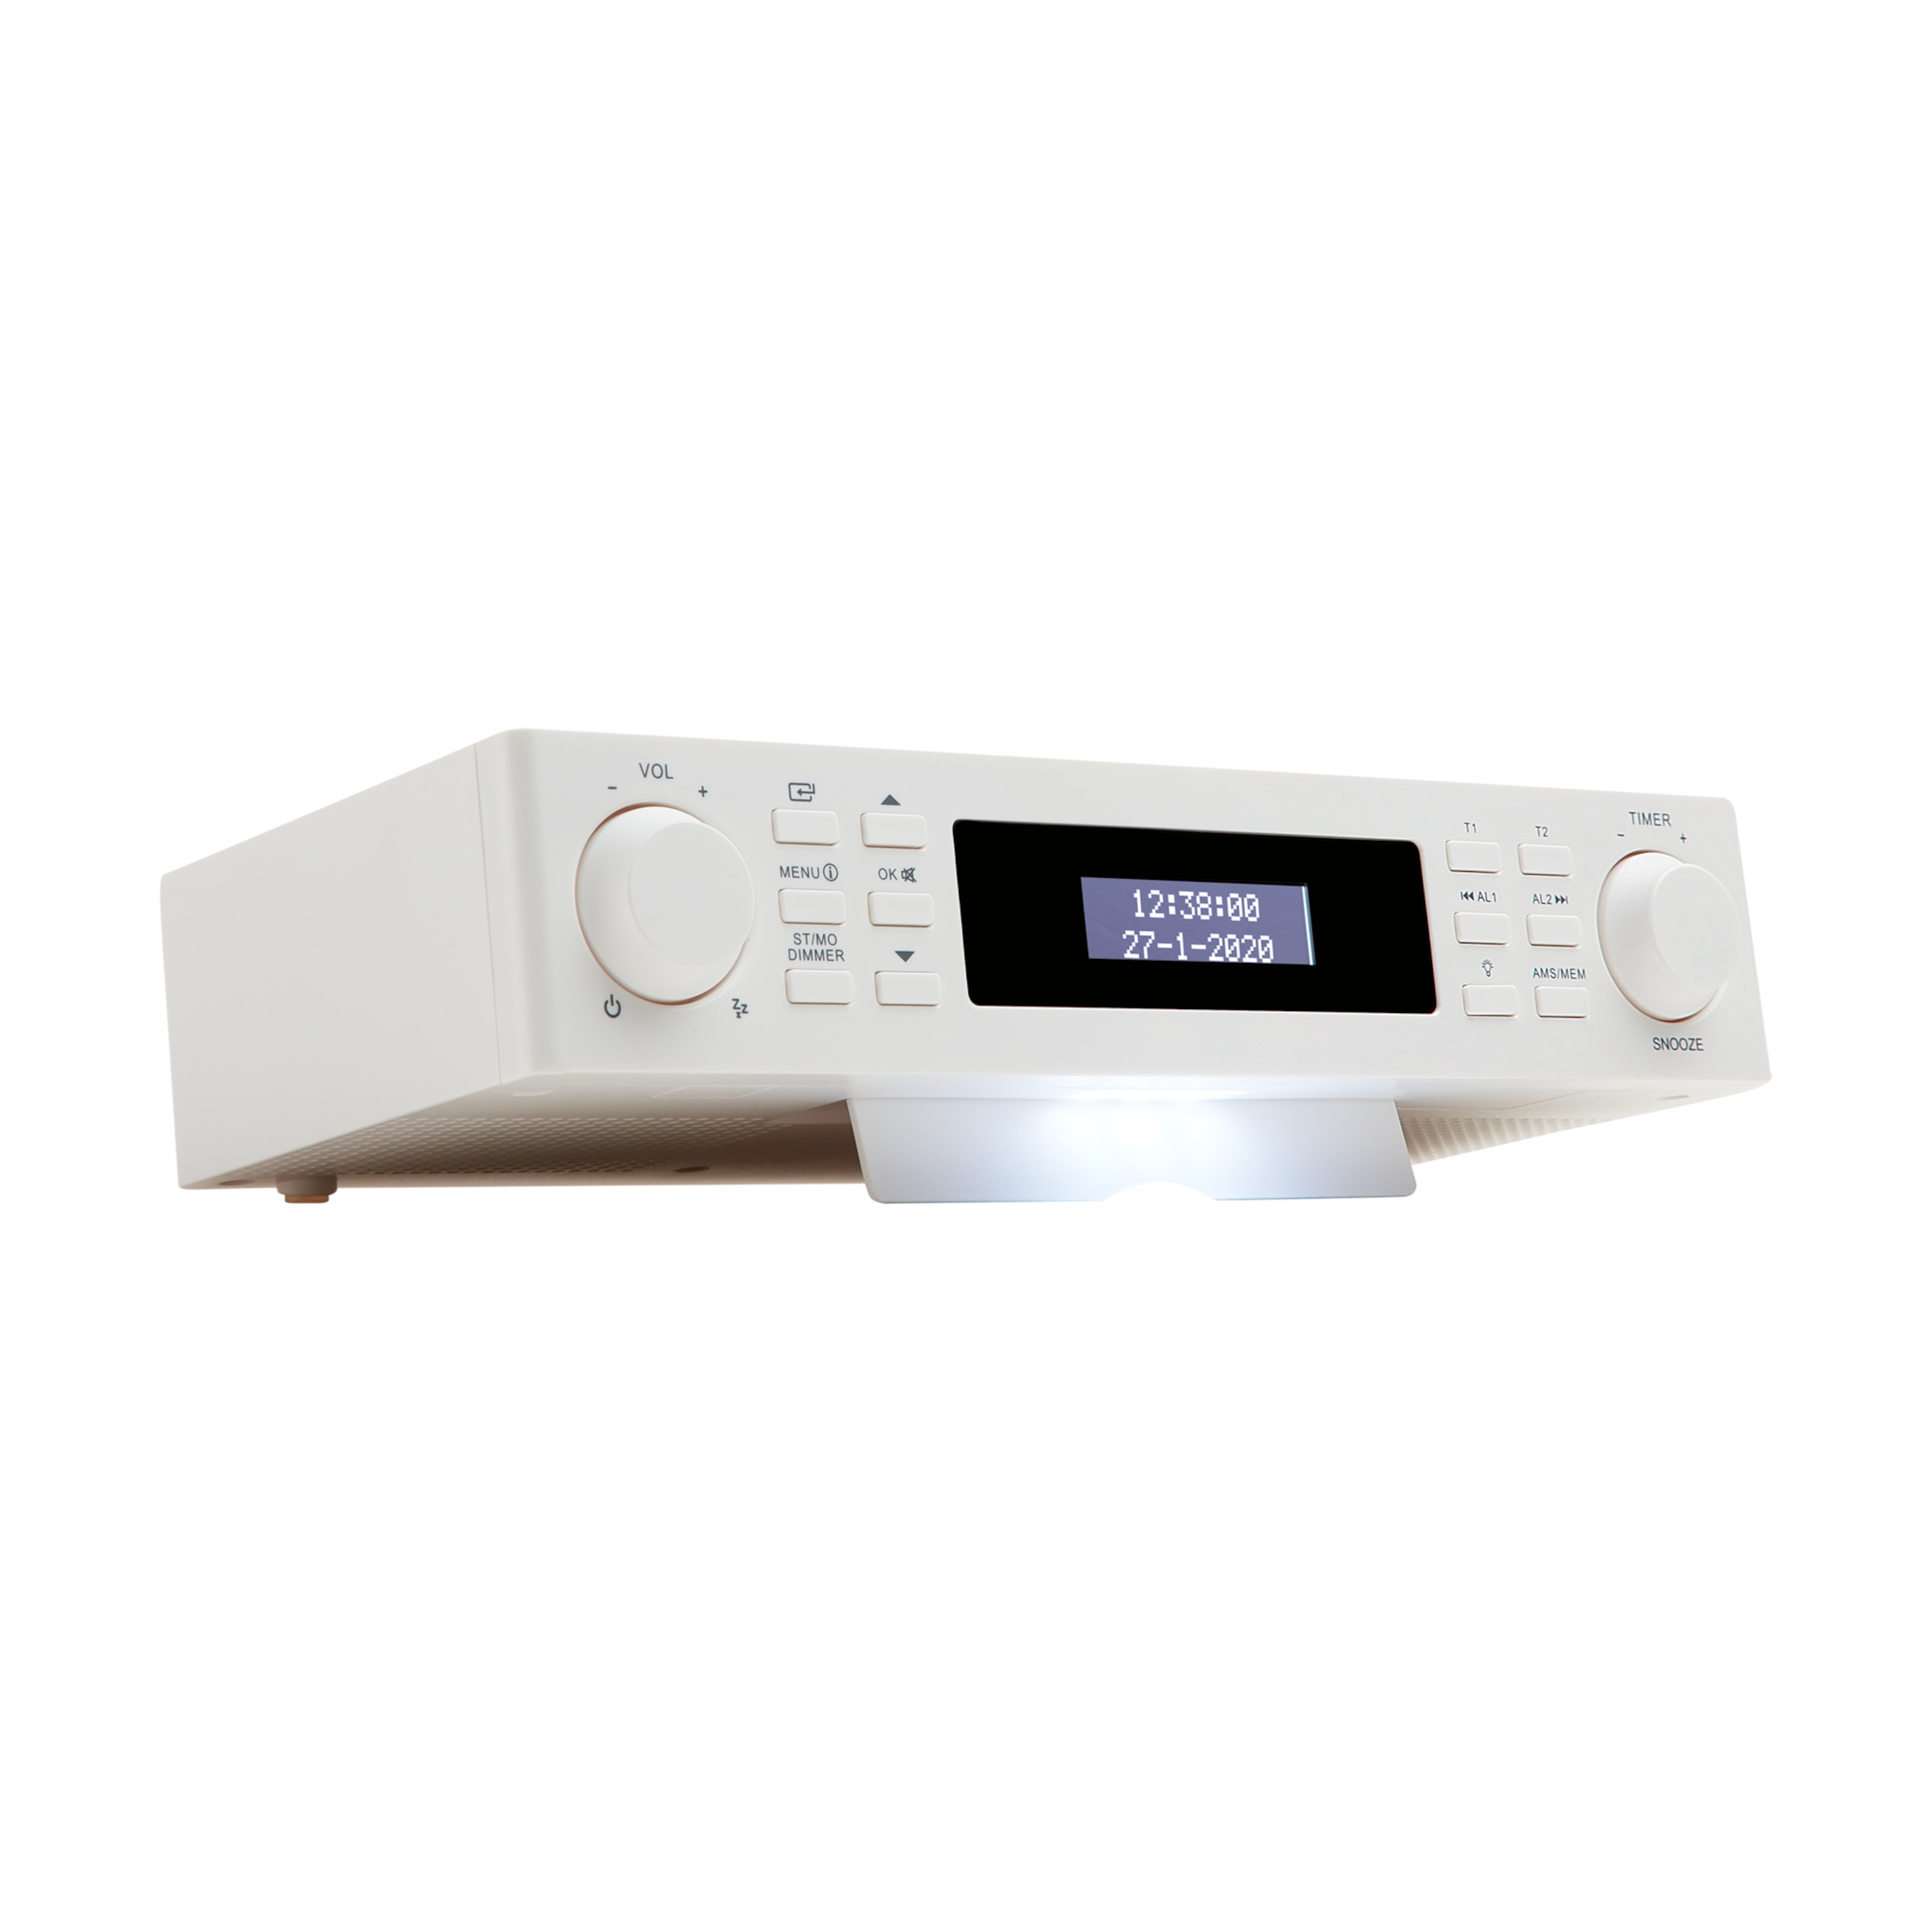 MEDION® LIFE® E66531 DAB+ Unterbauradio, Dot Matrix LCD-Display, PLL-UKW, Bassanhebung, Alarm- und Timerfunktion, automatischer Displaydimmer, 2 x 10 W max. Musikausgangsleistung  (B-Ware)